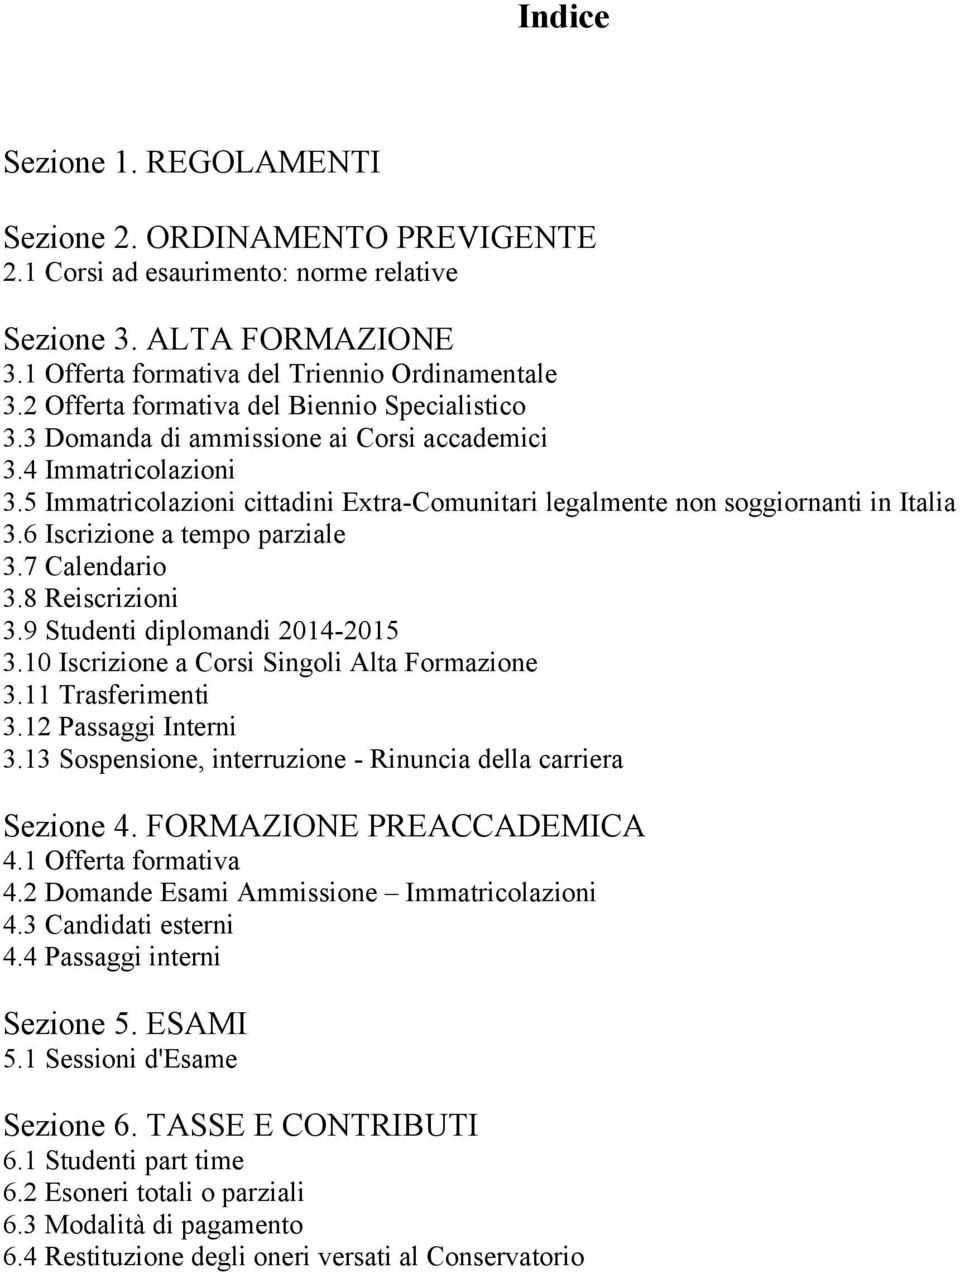 5 Immatricolazioni cittadini Extra-Comunitari legalmente non soggiornanti in Italia 3.6 Iscrizione a tempo parziale 3.7 Calendario 3.8 Reiscrizioni 3.9 Studenti diplomandi 2014-2015 3.